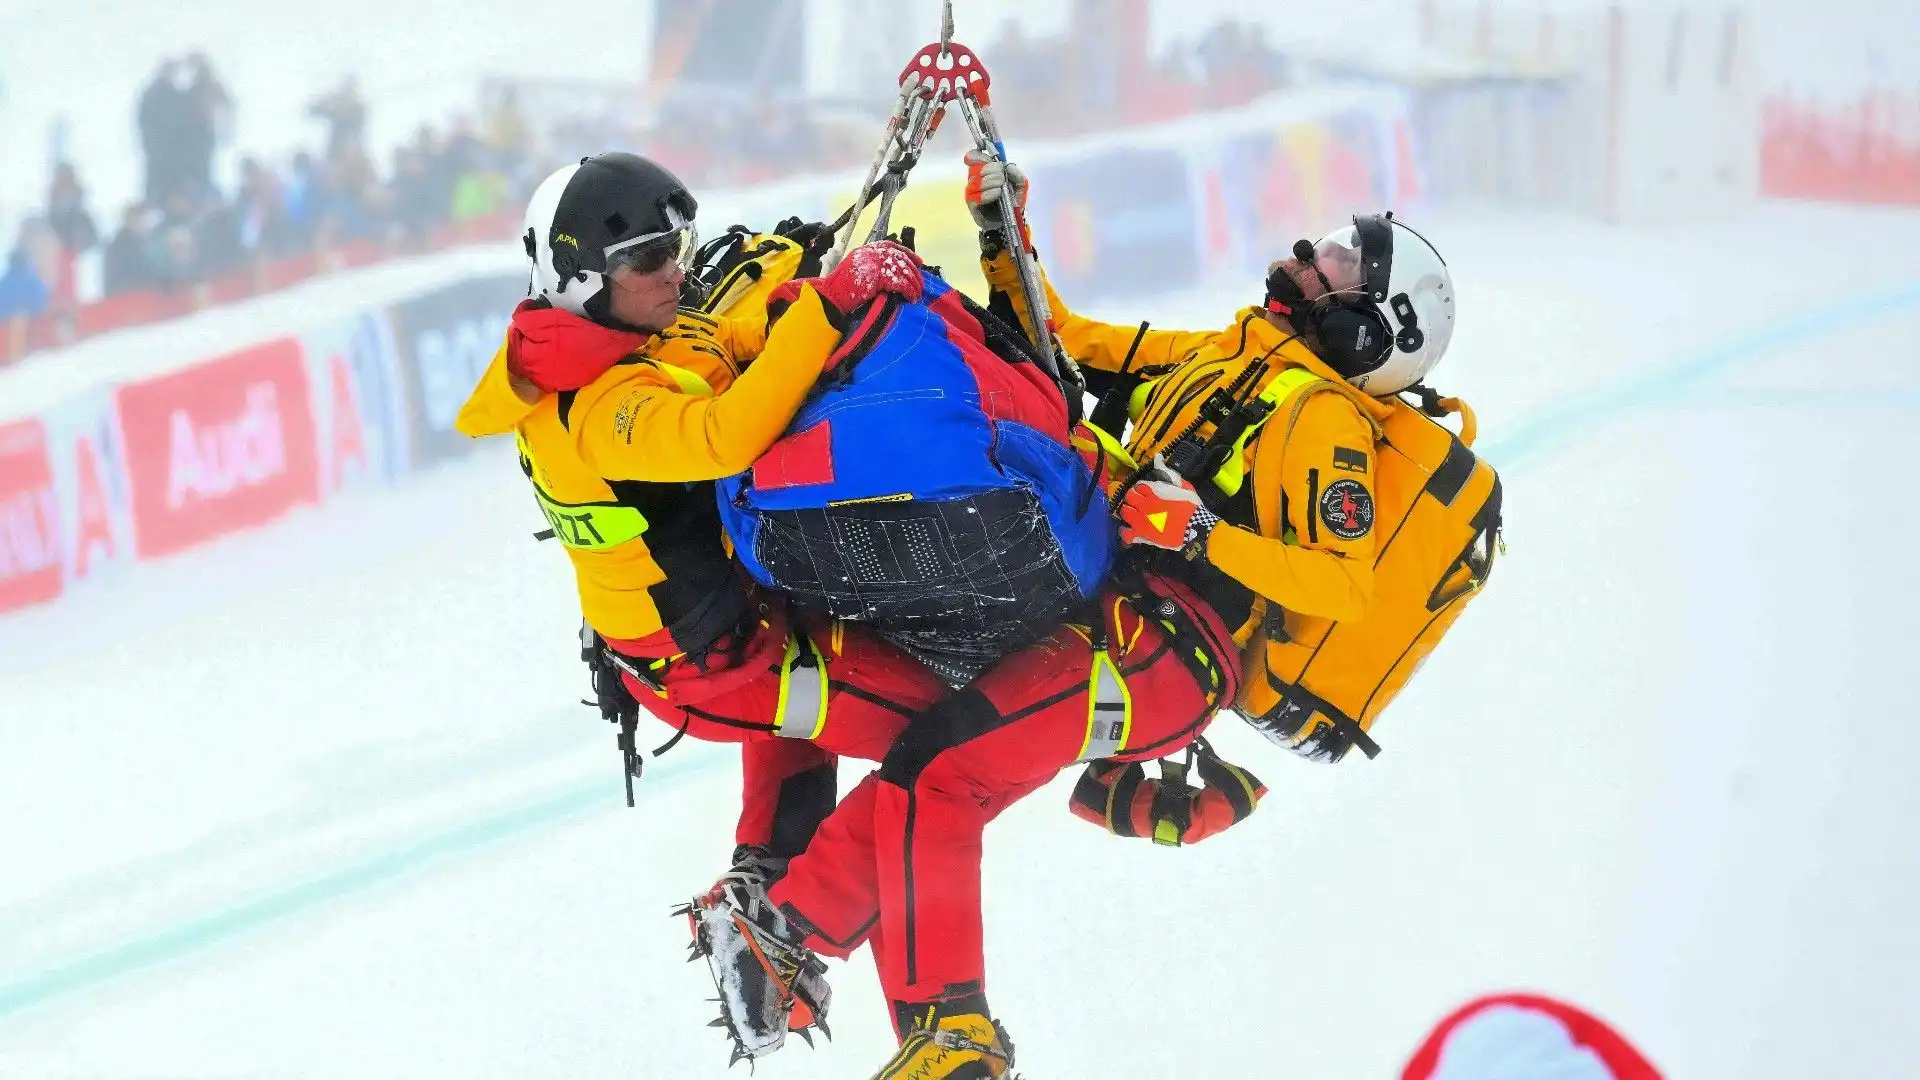 Secondo quanto riferisce Eurosport lo sciatore norvegese si è fratturato una gamba